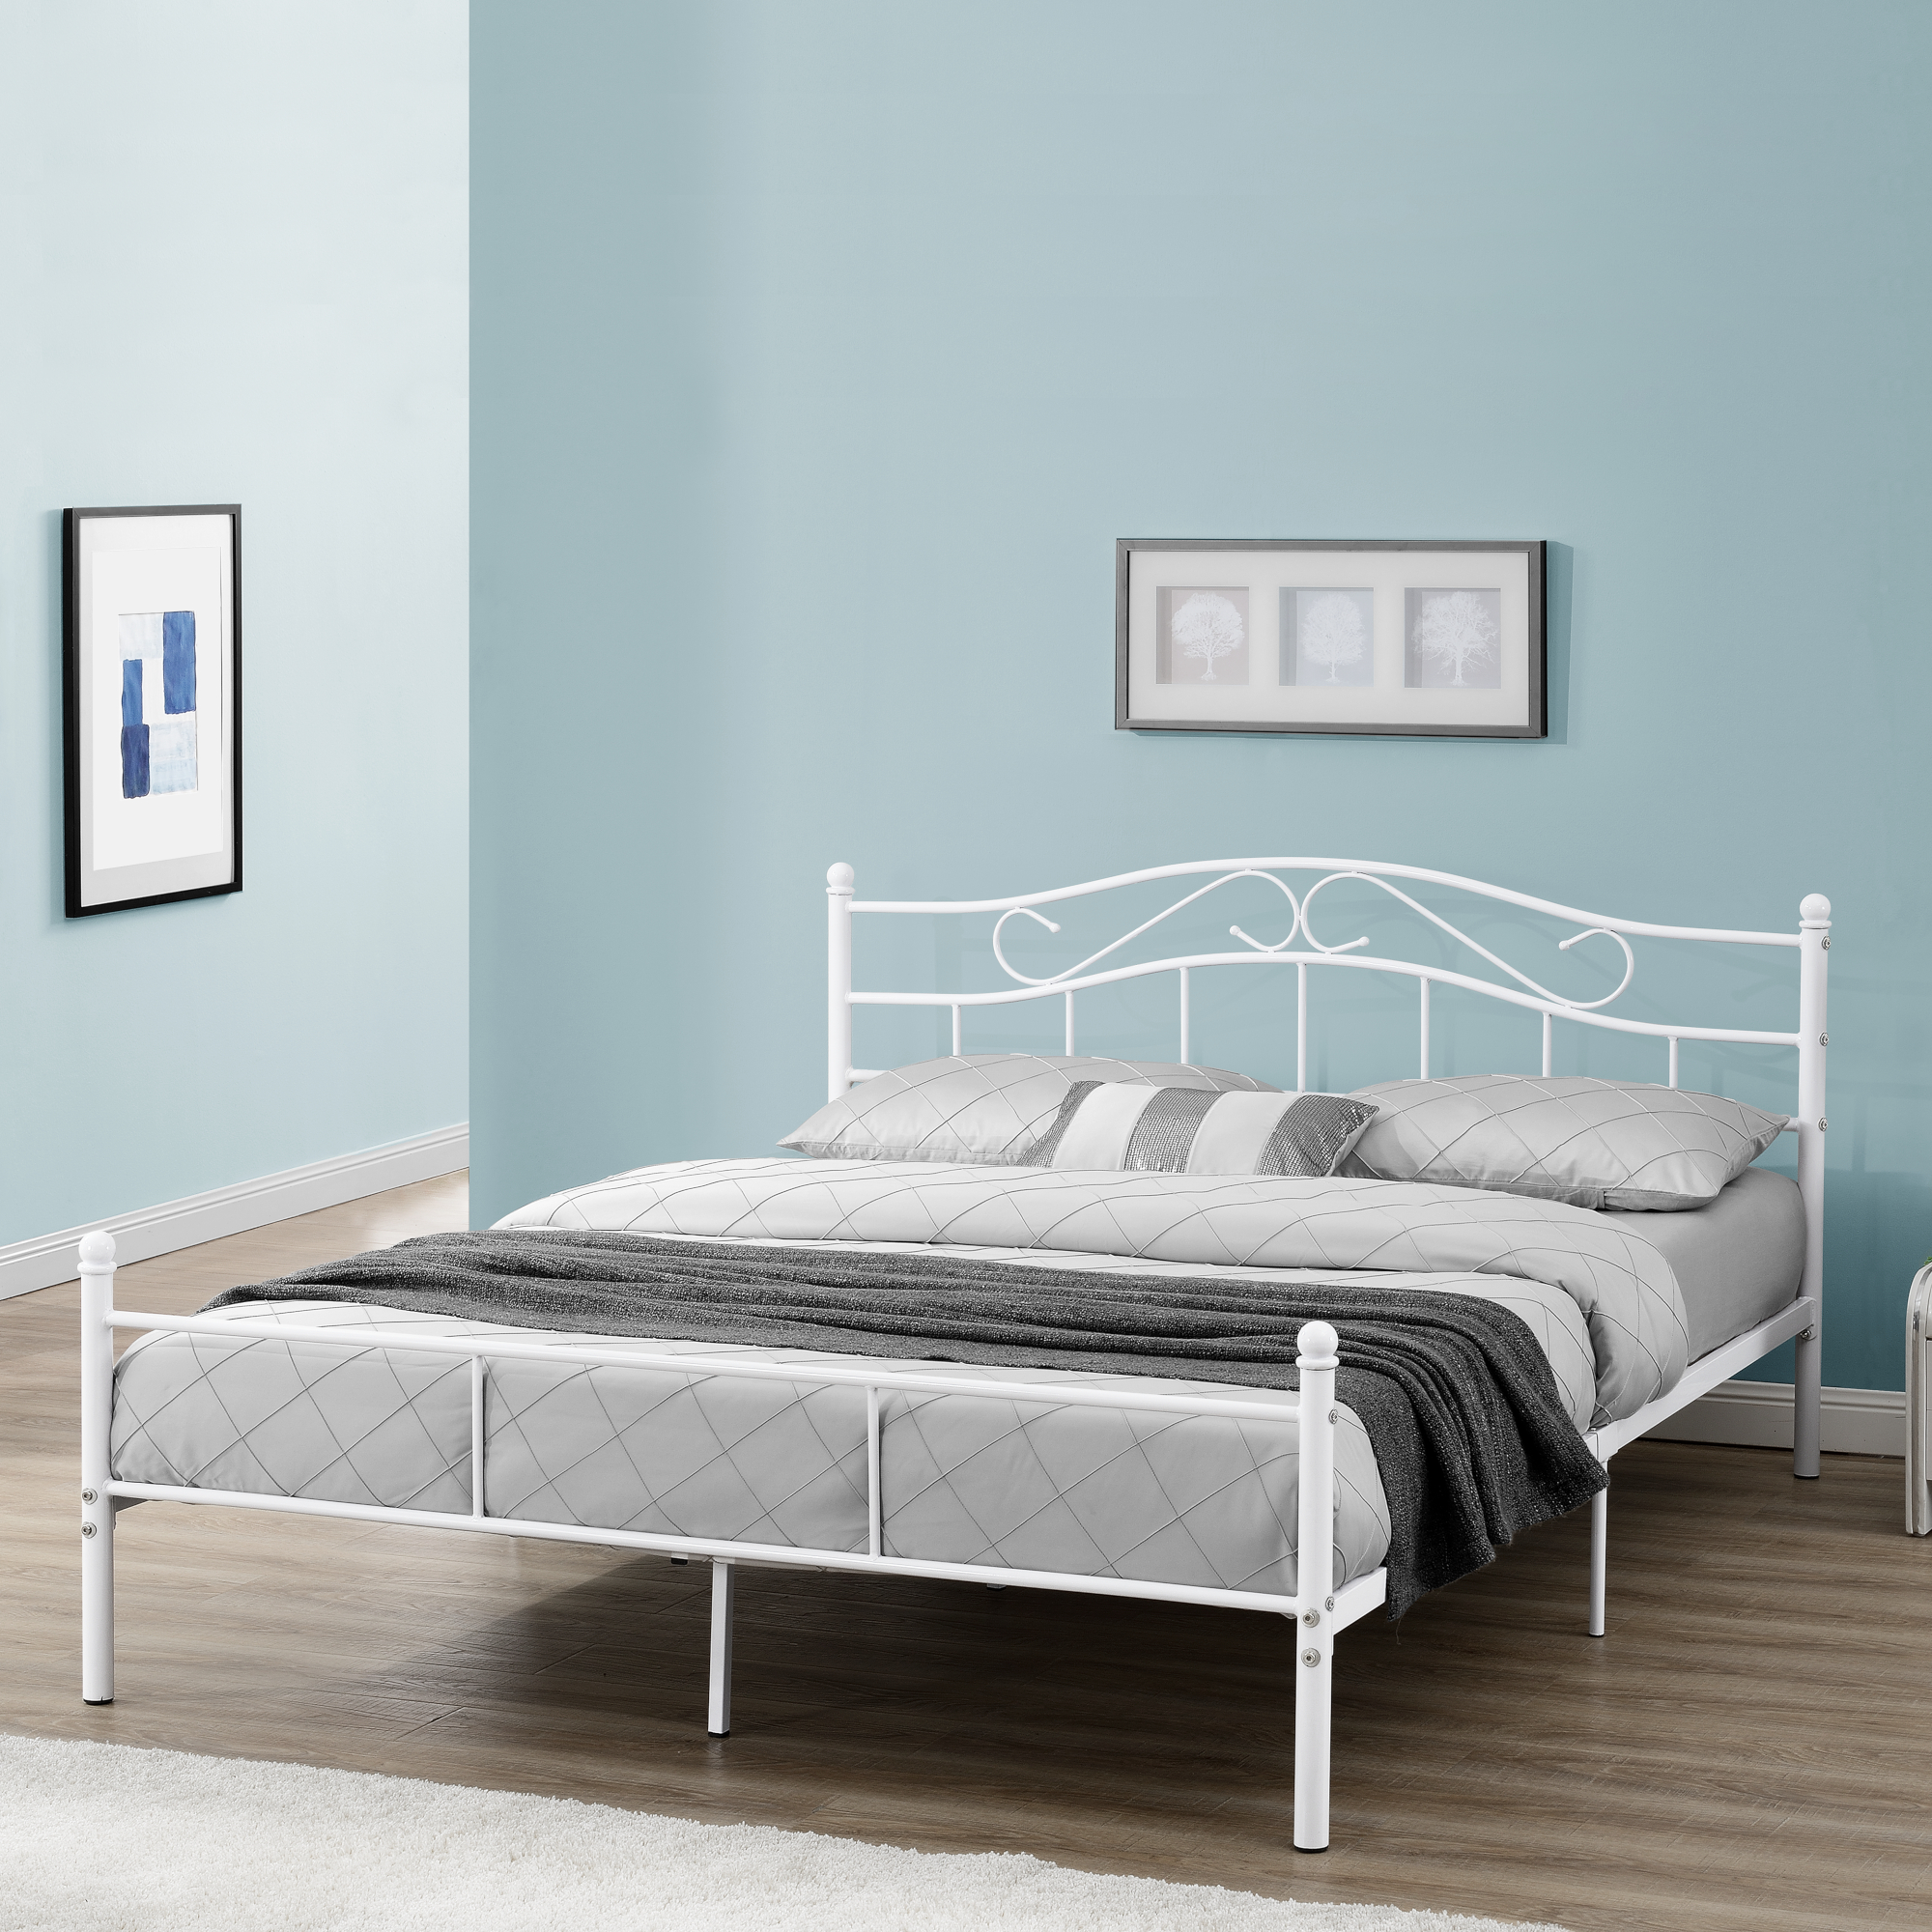 Metallbett 200x200cm Weiß Bett Bettgestell Doppelbett Lattenrost 